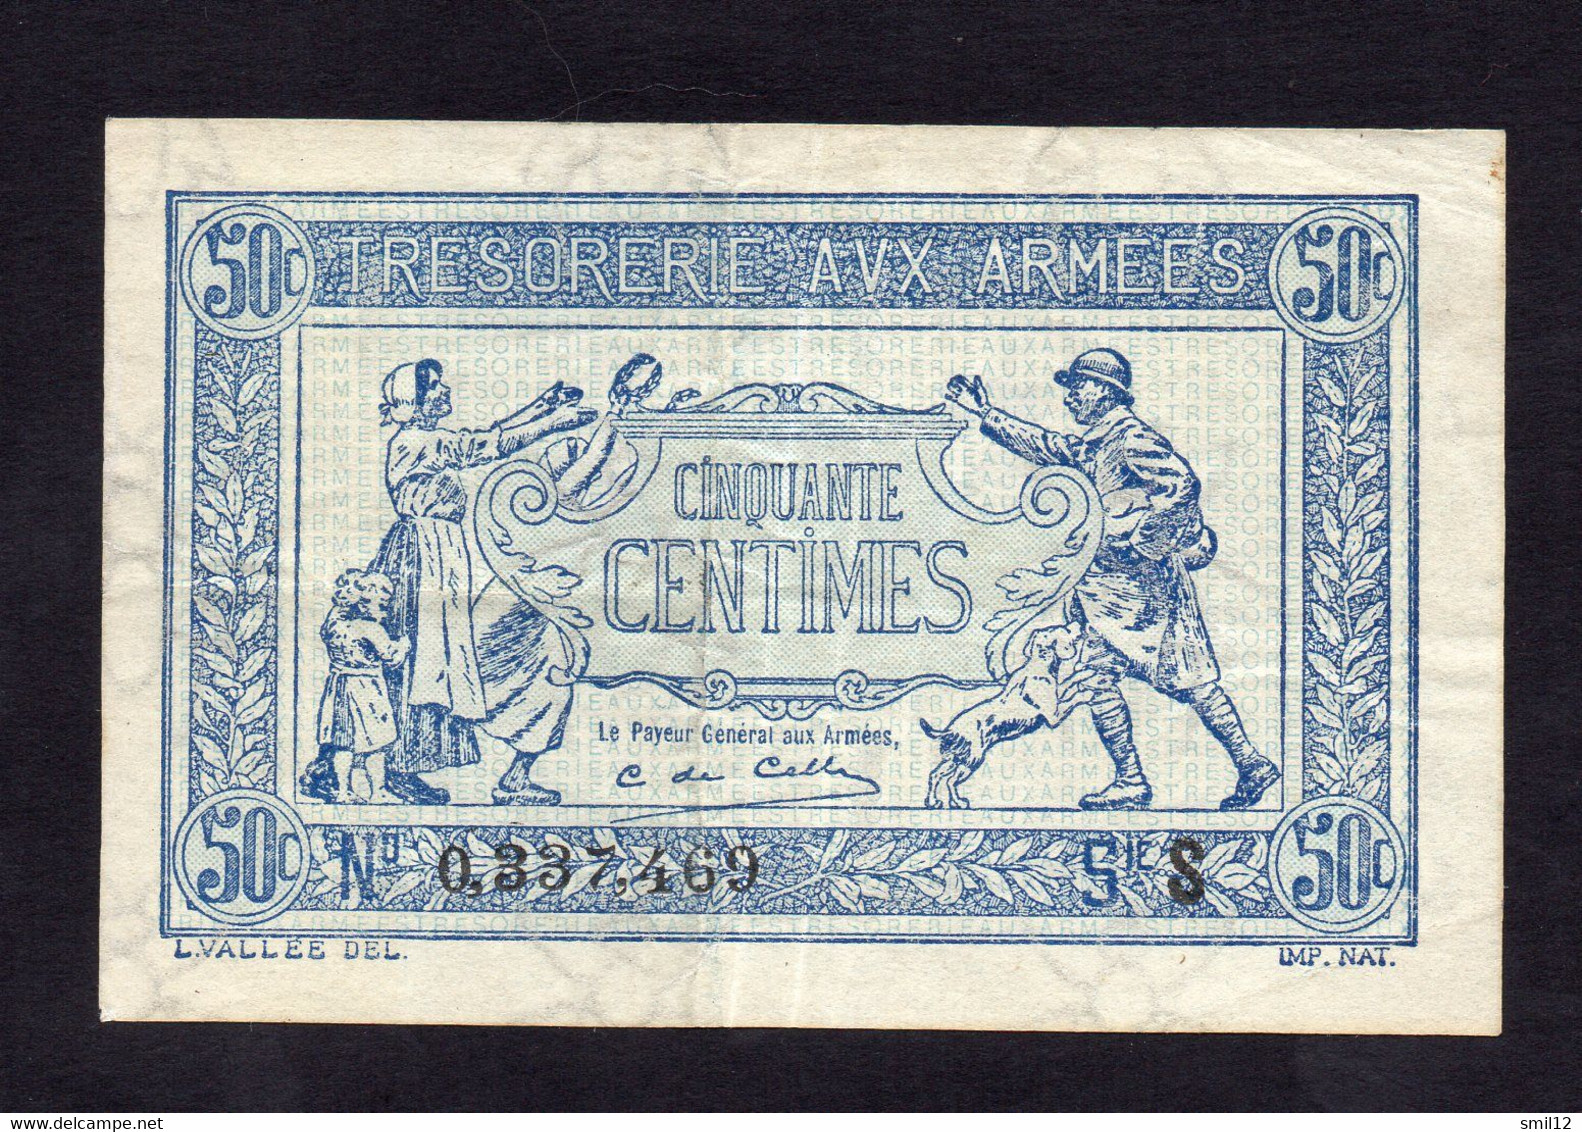 Trésorerie Aux Armées - 50 Centimes - Lettre S (2) - 1917-1919 Trésorerie Aux Armées